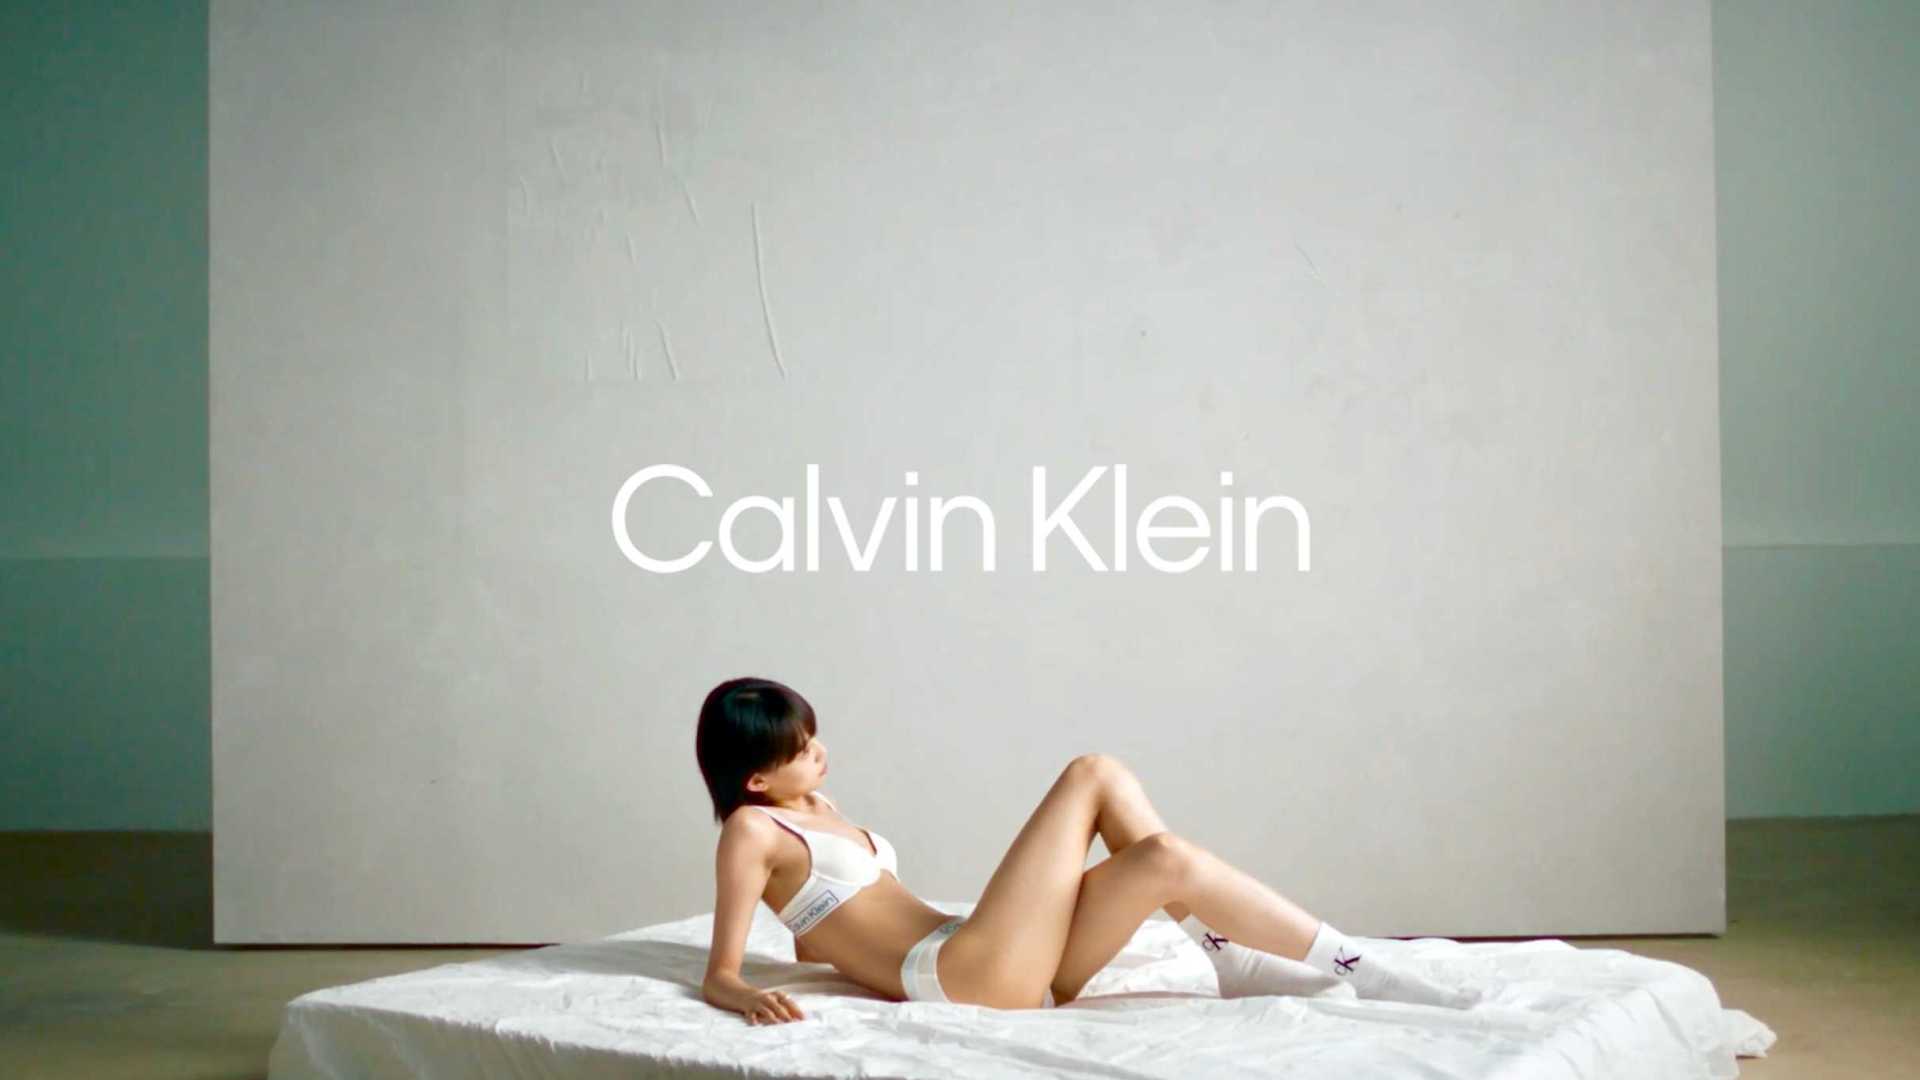 Calvin Klein 6.18 Campaign